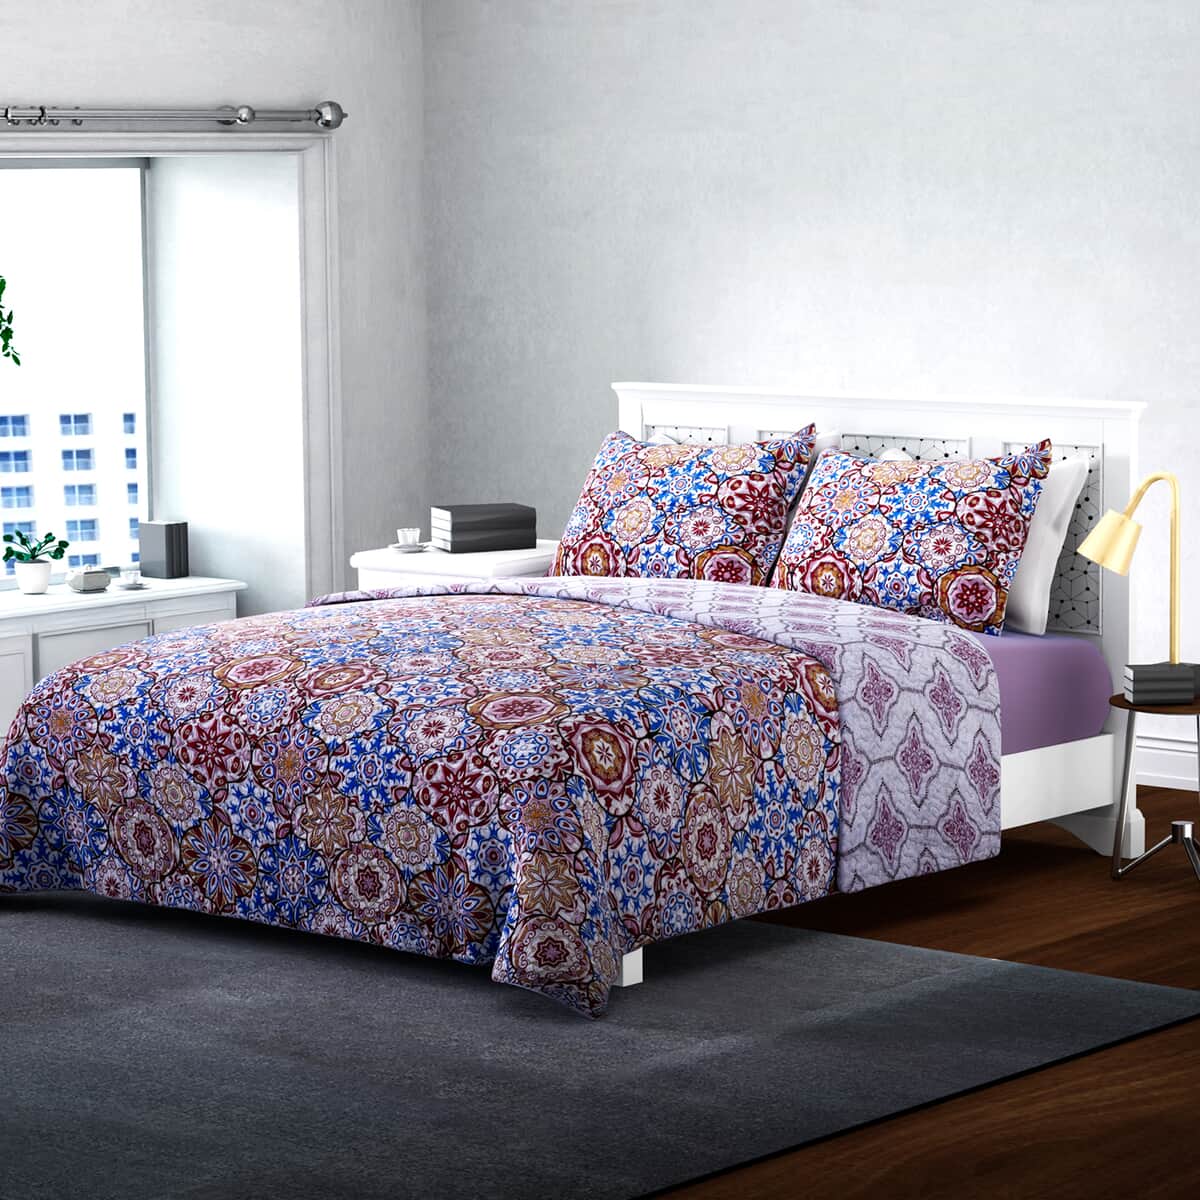 Homesmart Multicolor Printed Microfiber Quilt (King) and Set of 2 Shams, Quilt Set, Comforter Set, Bed Comforters image number 0